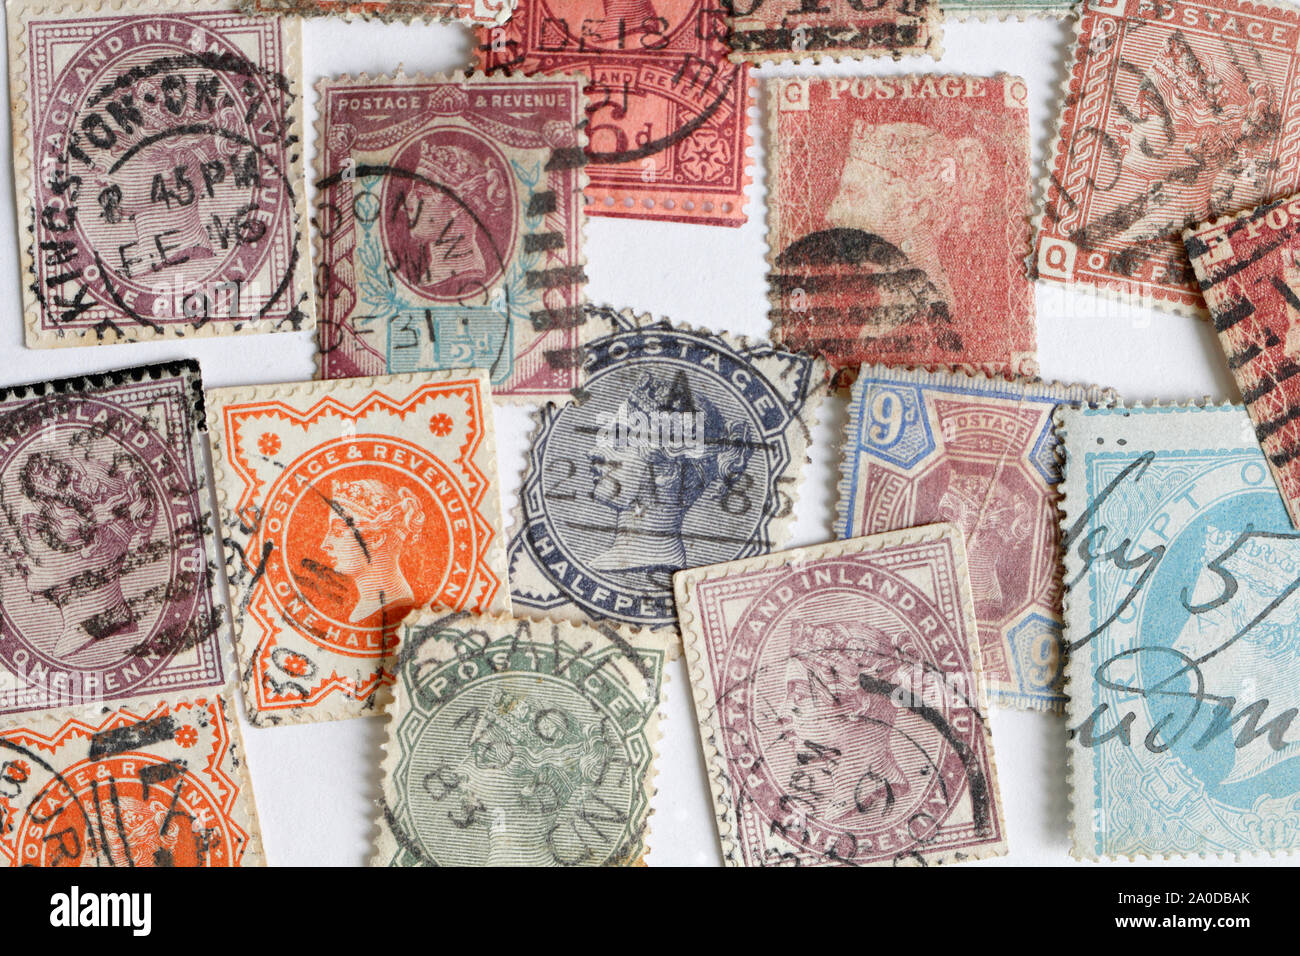 Assortiment de timbres de la Reine britannique Victoria, timbres de poste, collecte de timbres Banque D'Images